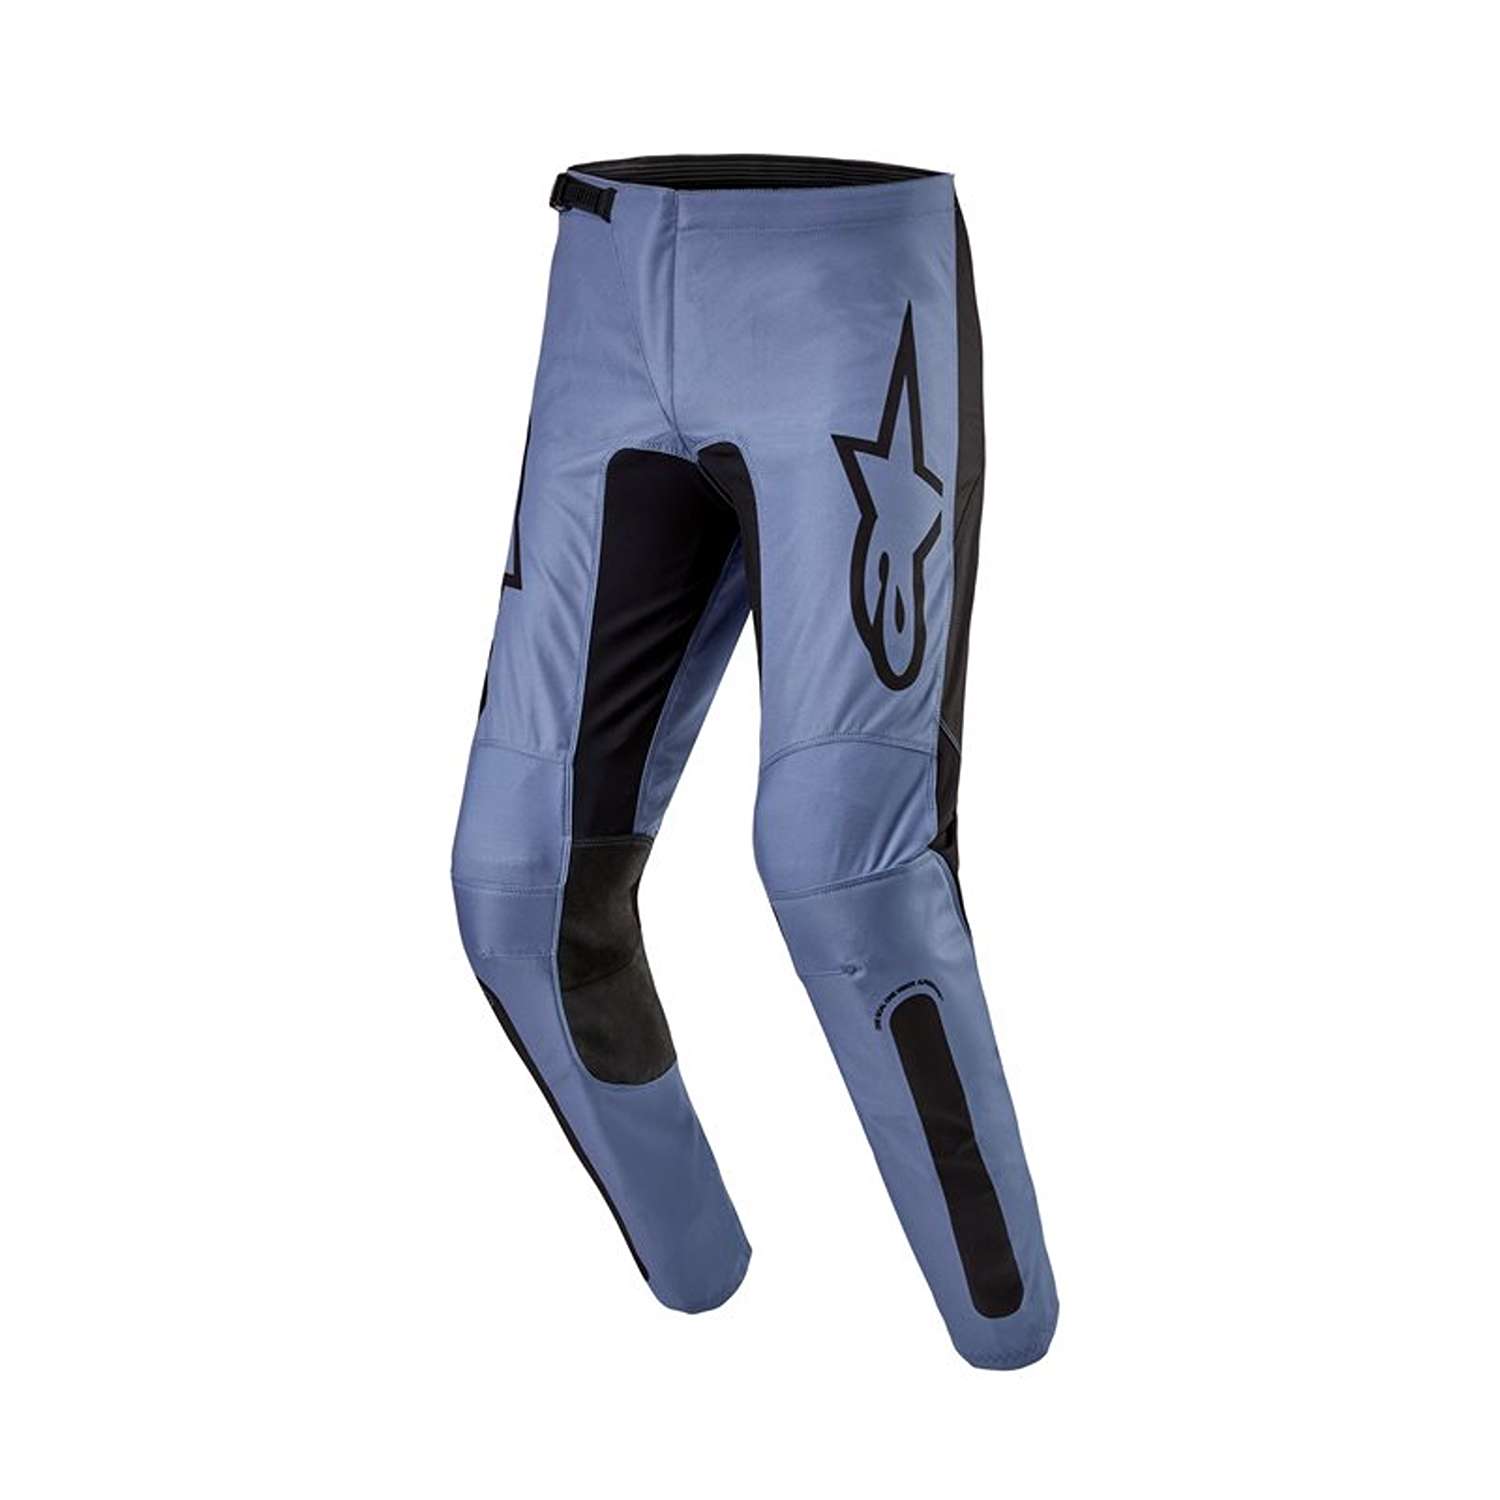 Image of EU Alpinestars Fluid Lurv Pants Light Blue Black Taille 40